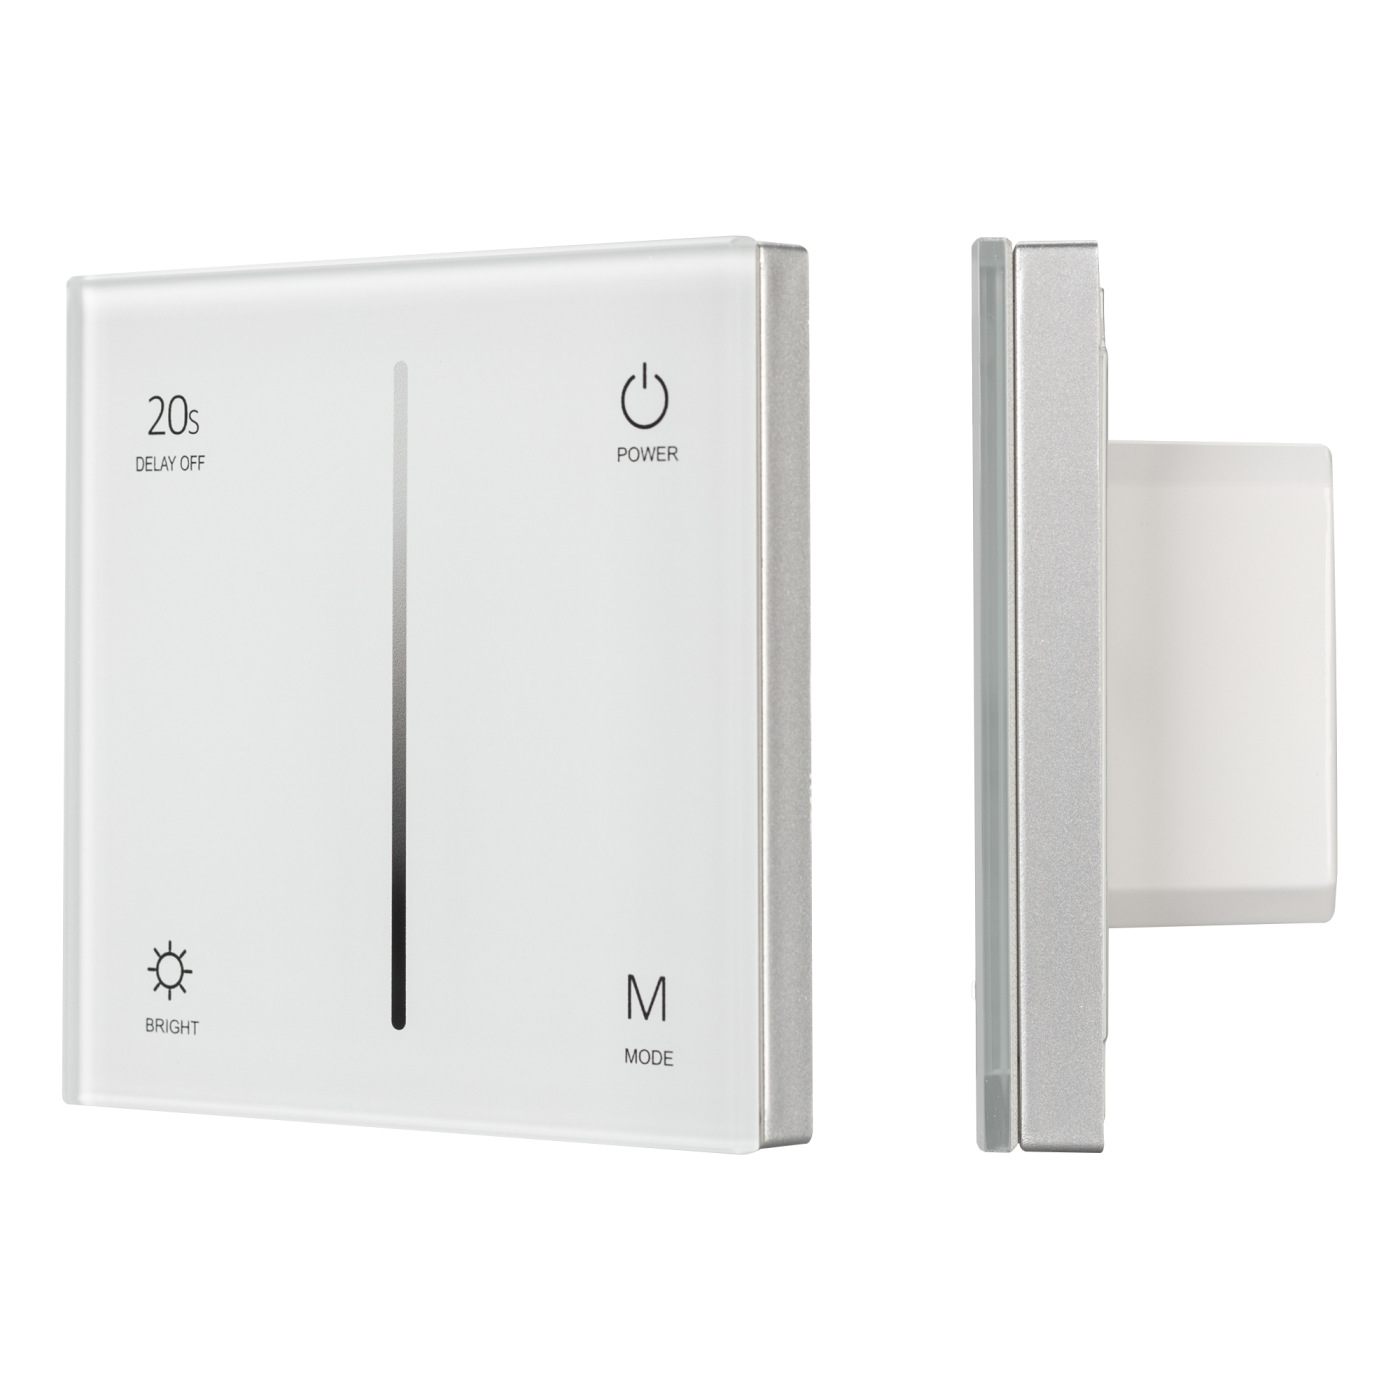 Панель SMART-P35-DIM-IN White (230V, 0-10V, Sens, 2.4G) (Arlight, IP20 Пластик, 5 лет) панель knob smart p87 dim silver 3v 1 зона 2 4g arlight ip20 пластик 5 лет